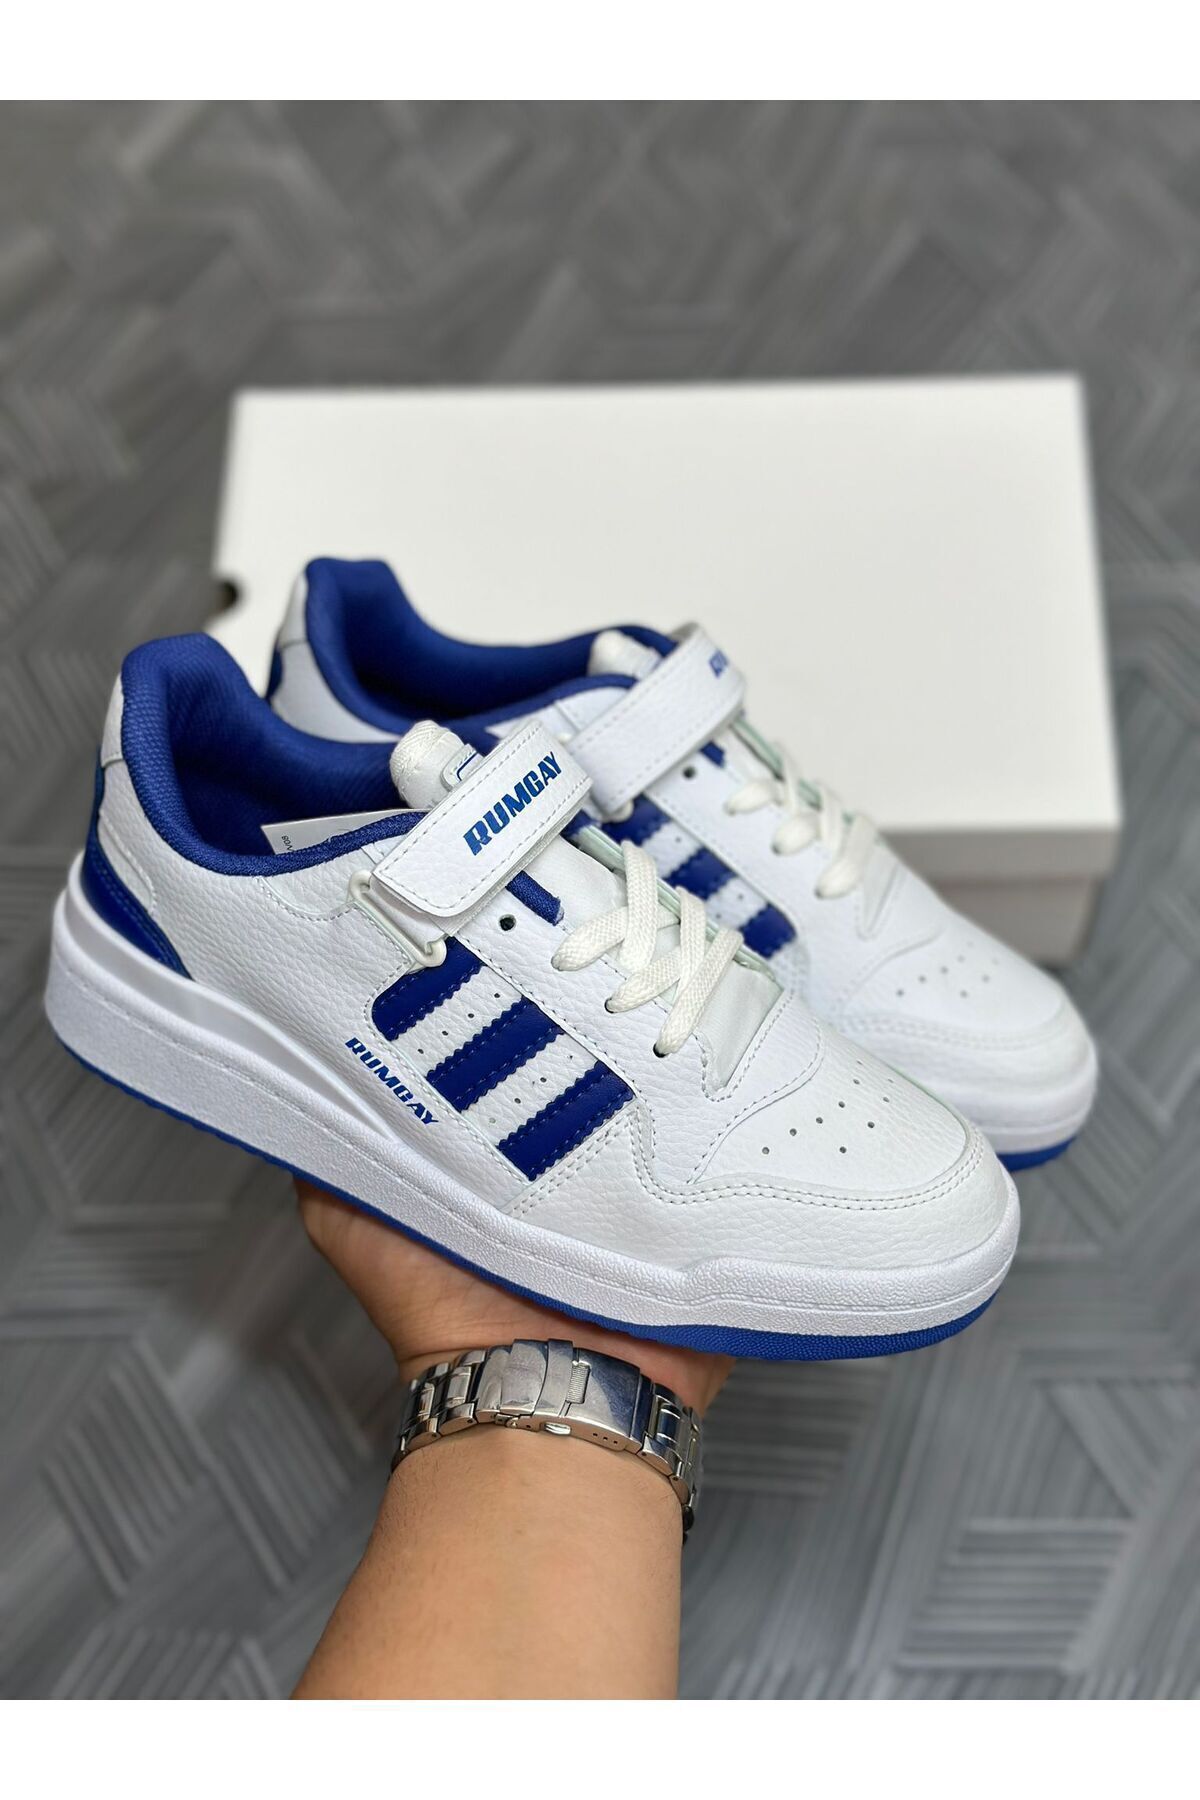 aleynashoes Beyaz Mavi Sneaker Spor Ayakkabı